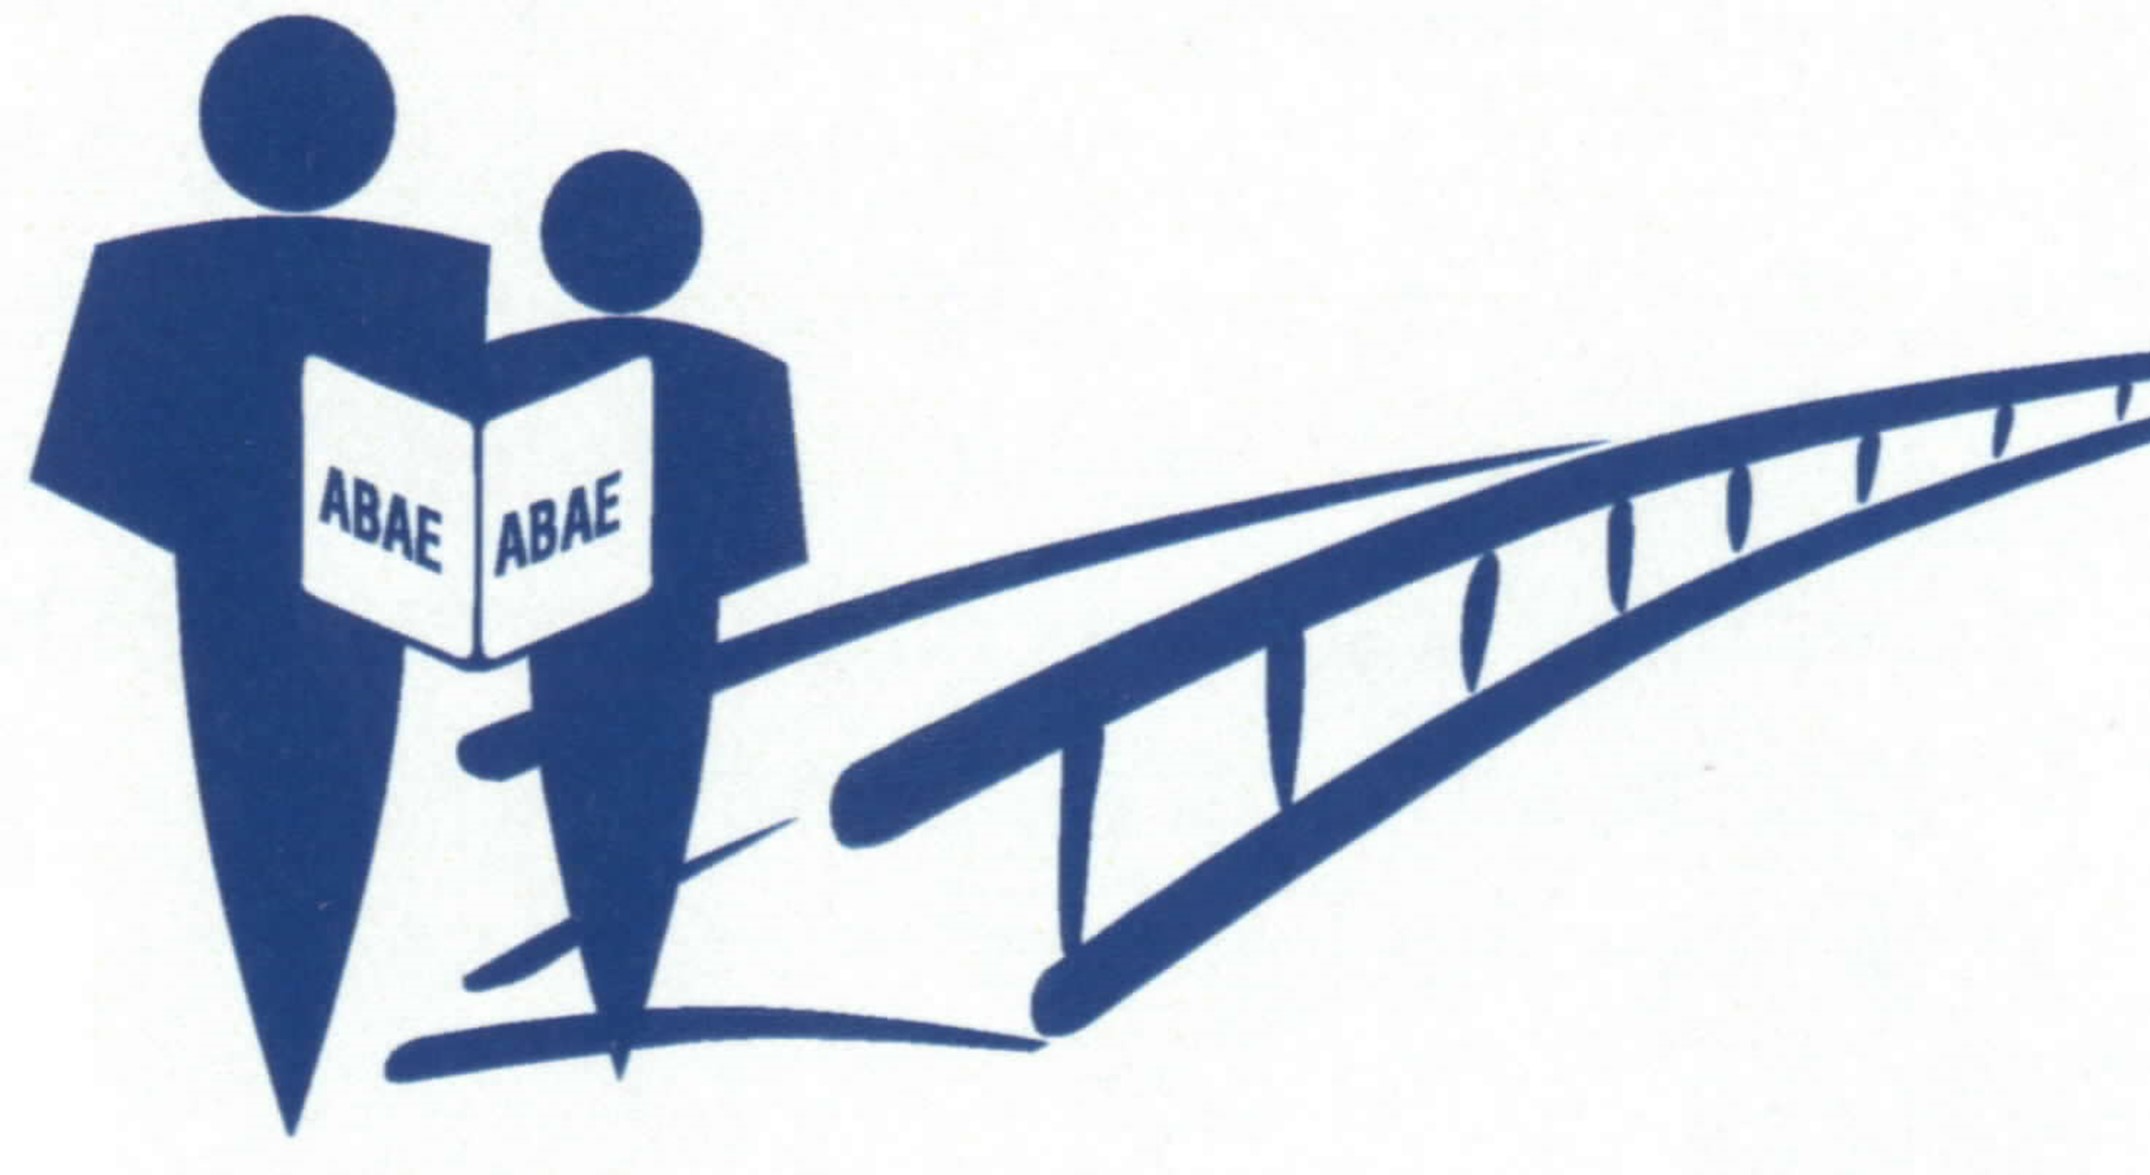 ABAE Logo